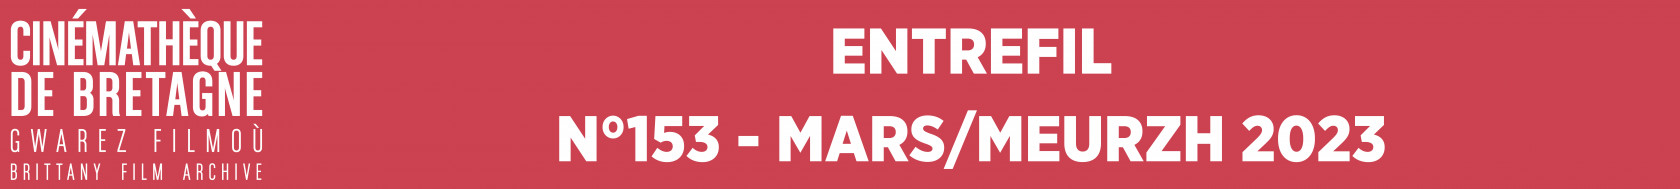 Entrefil n°153 - Mars/Meurzh 2023